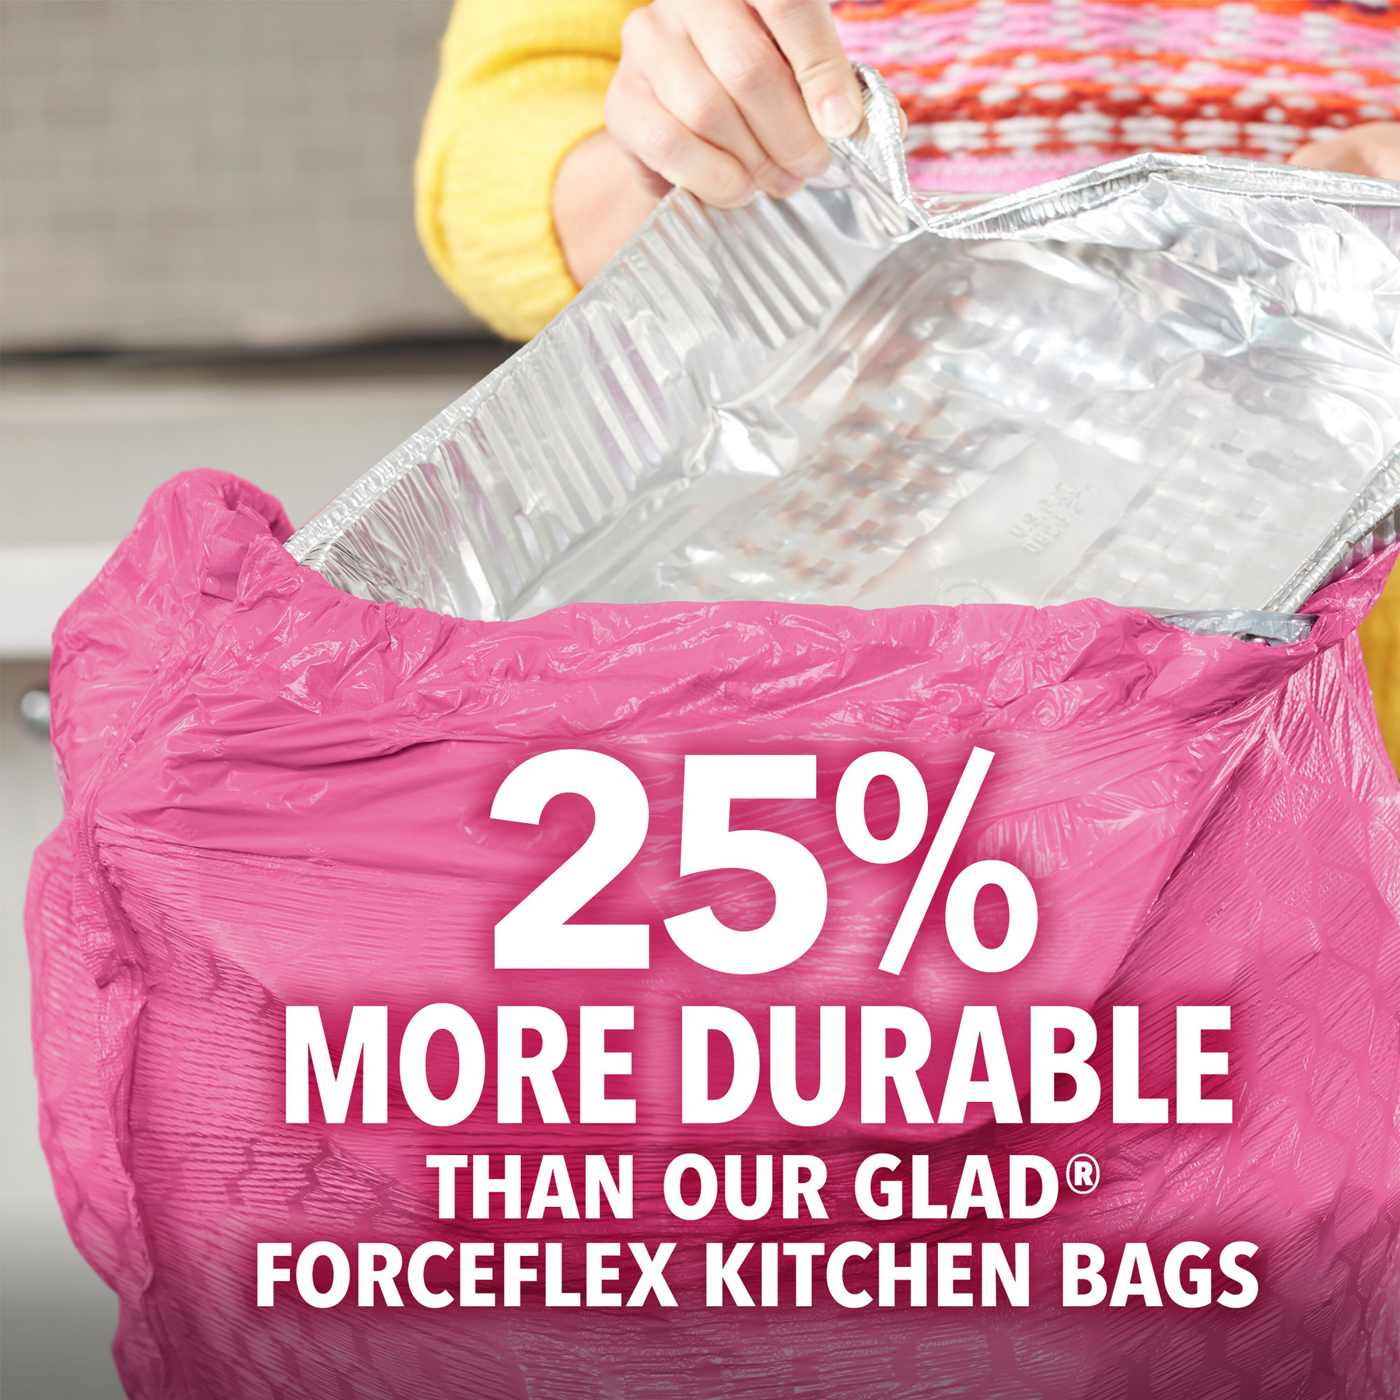 Glad 13 gal ForceFlex Plus Tall Kitchen Drawstring Trash Bags